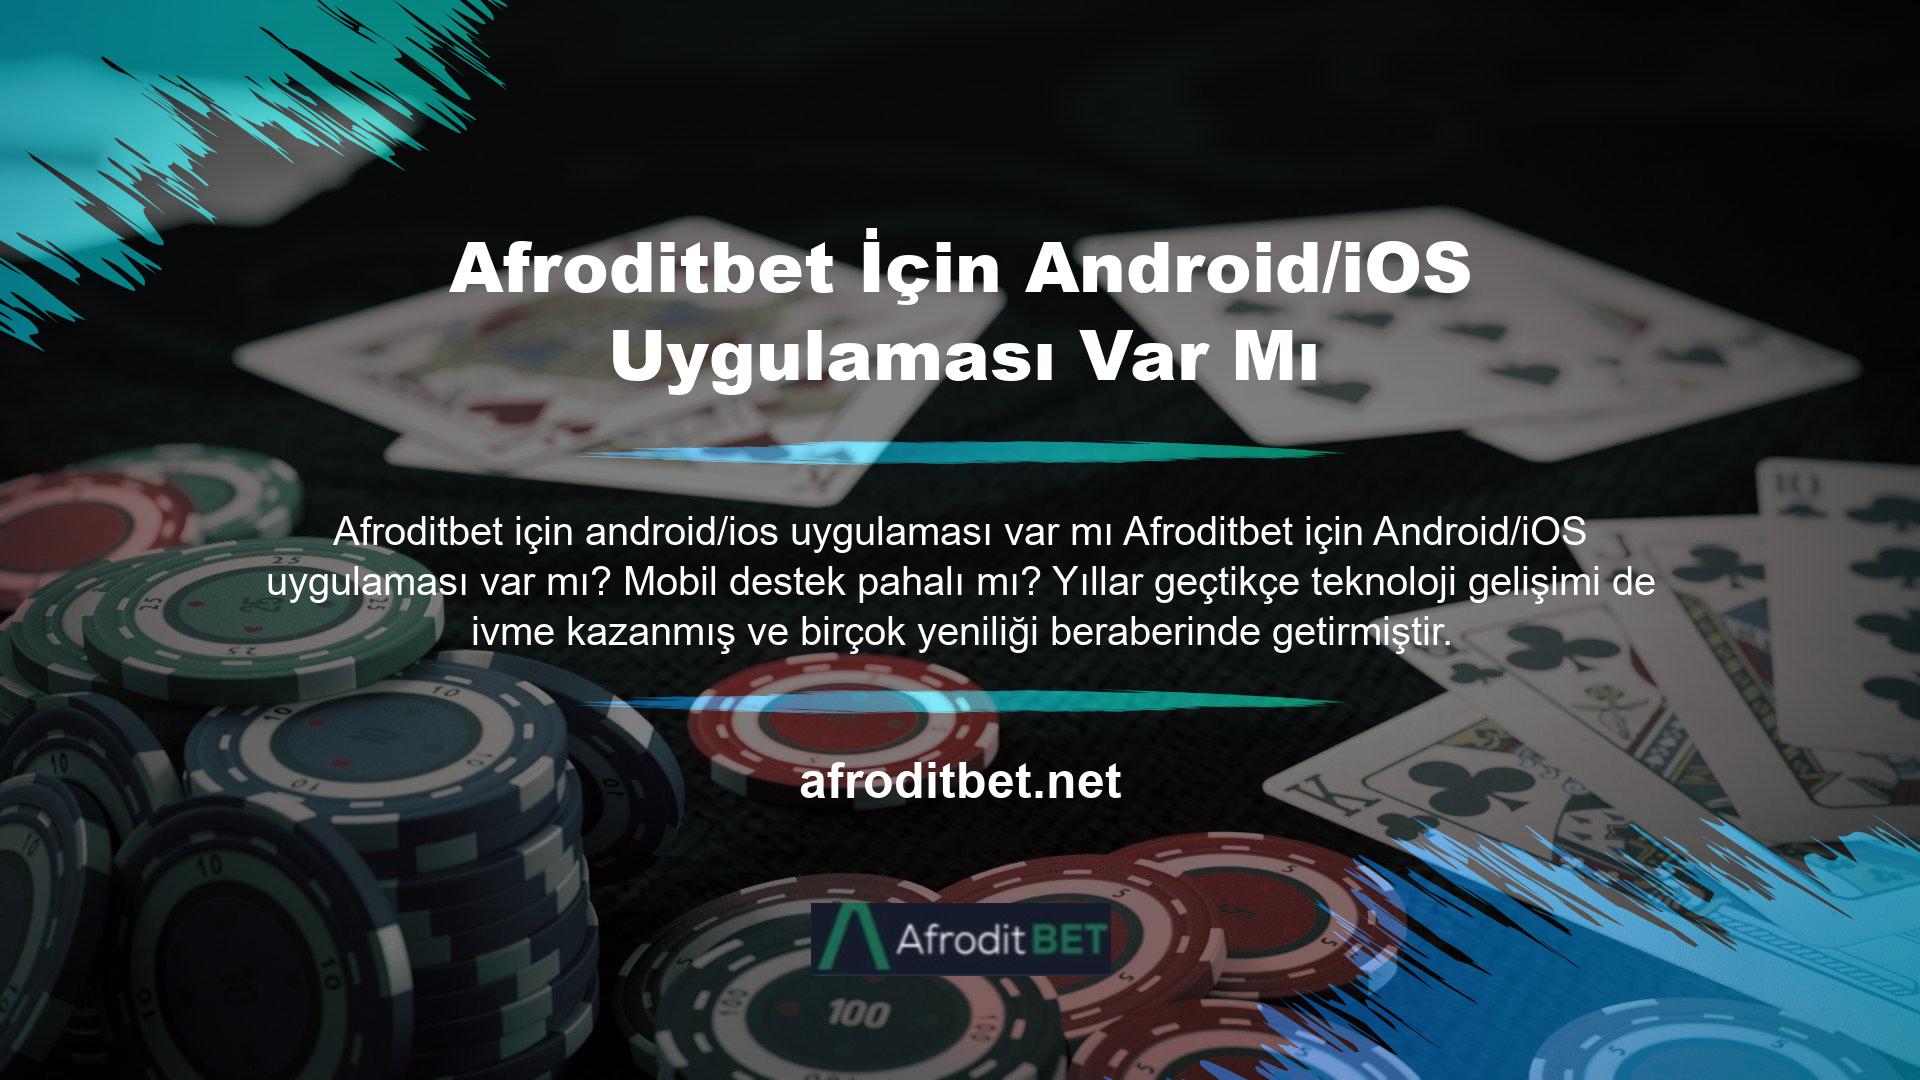 Tüm Android veya iOS cihazlar için geliştirilen ve hazırlanan Afroditbet mobil uygulaması ile web sitenize erişim artık daha da kolay